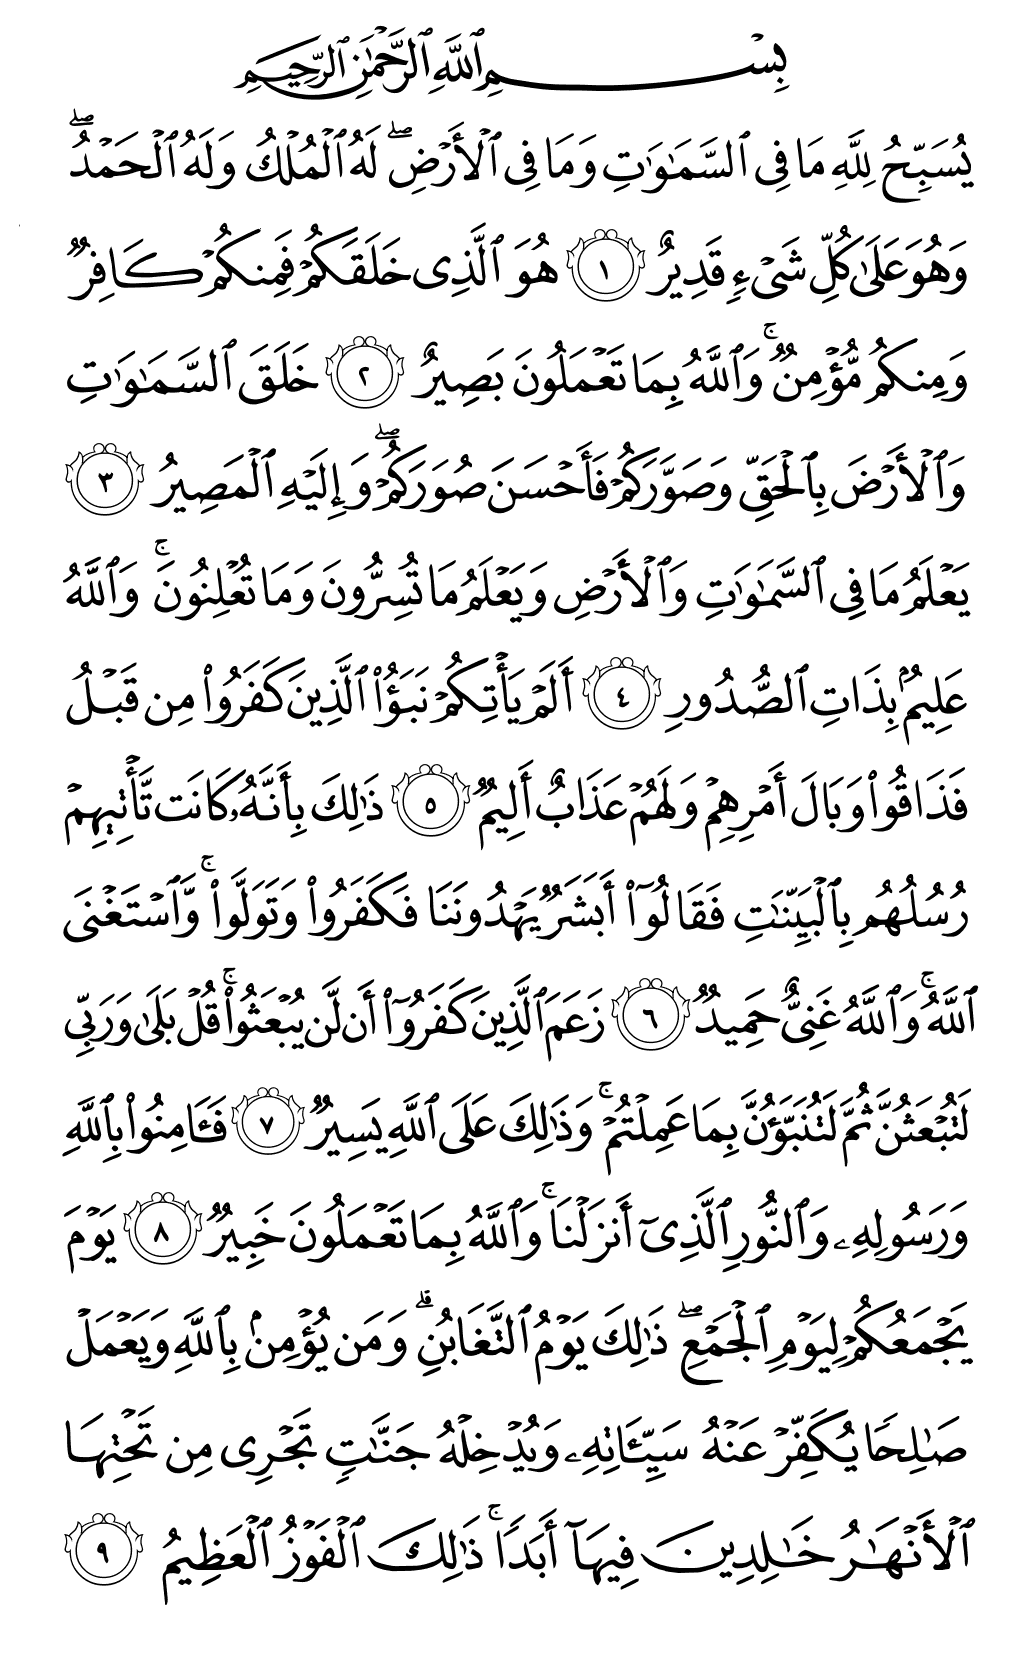 الصفحة رقم 556 من القرآن الكريم